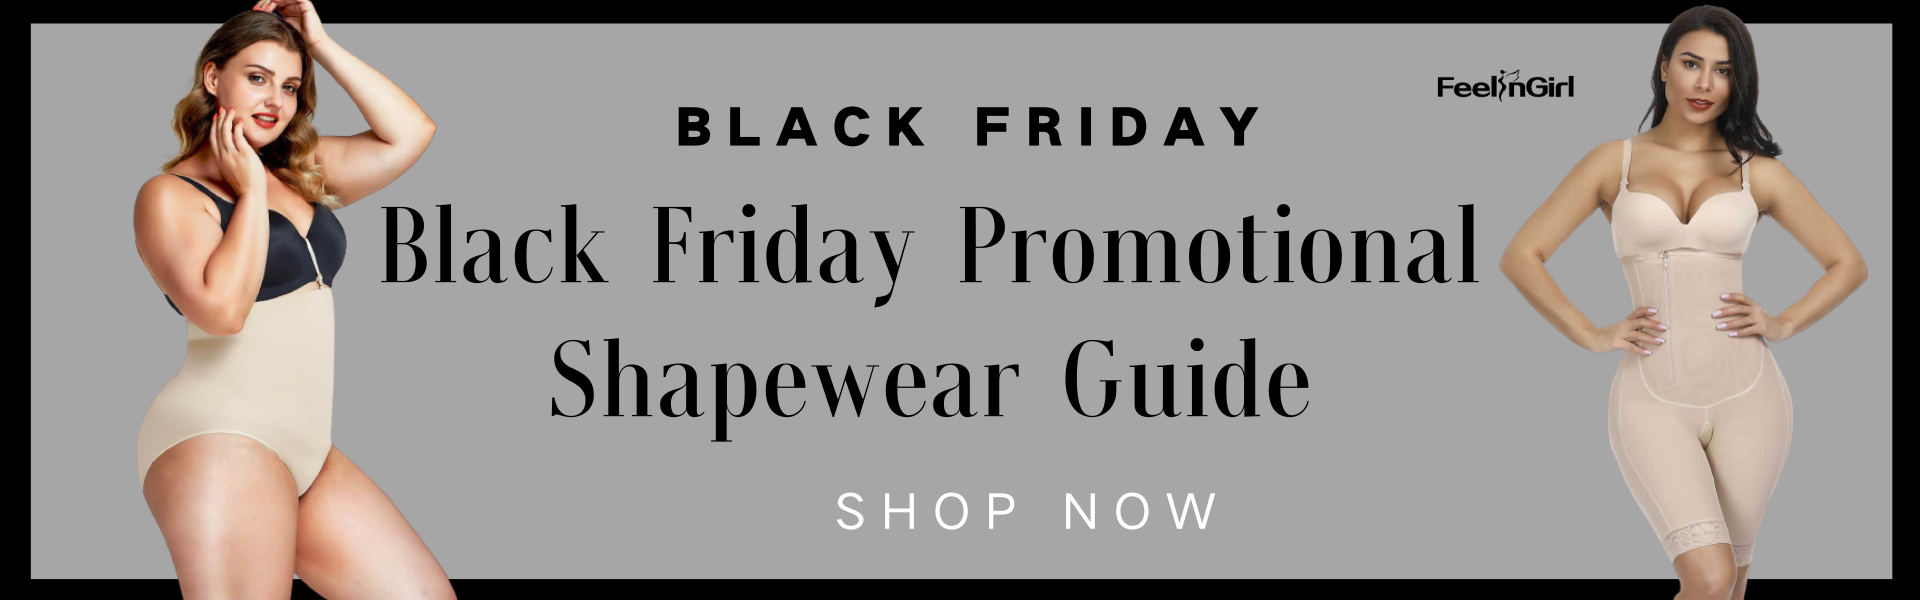 Black Friday Promotional Shapewear Guide